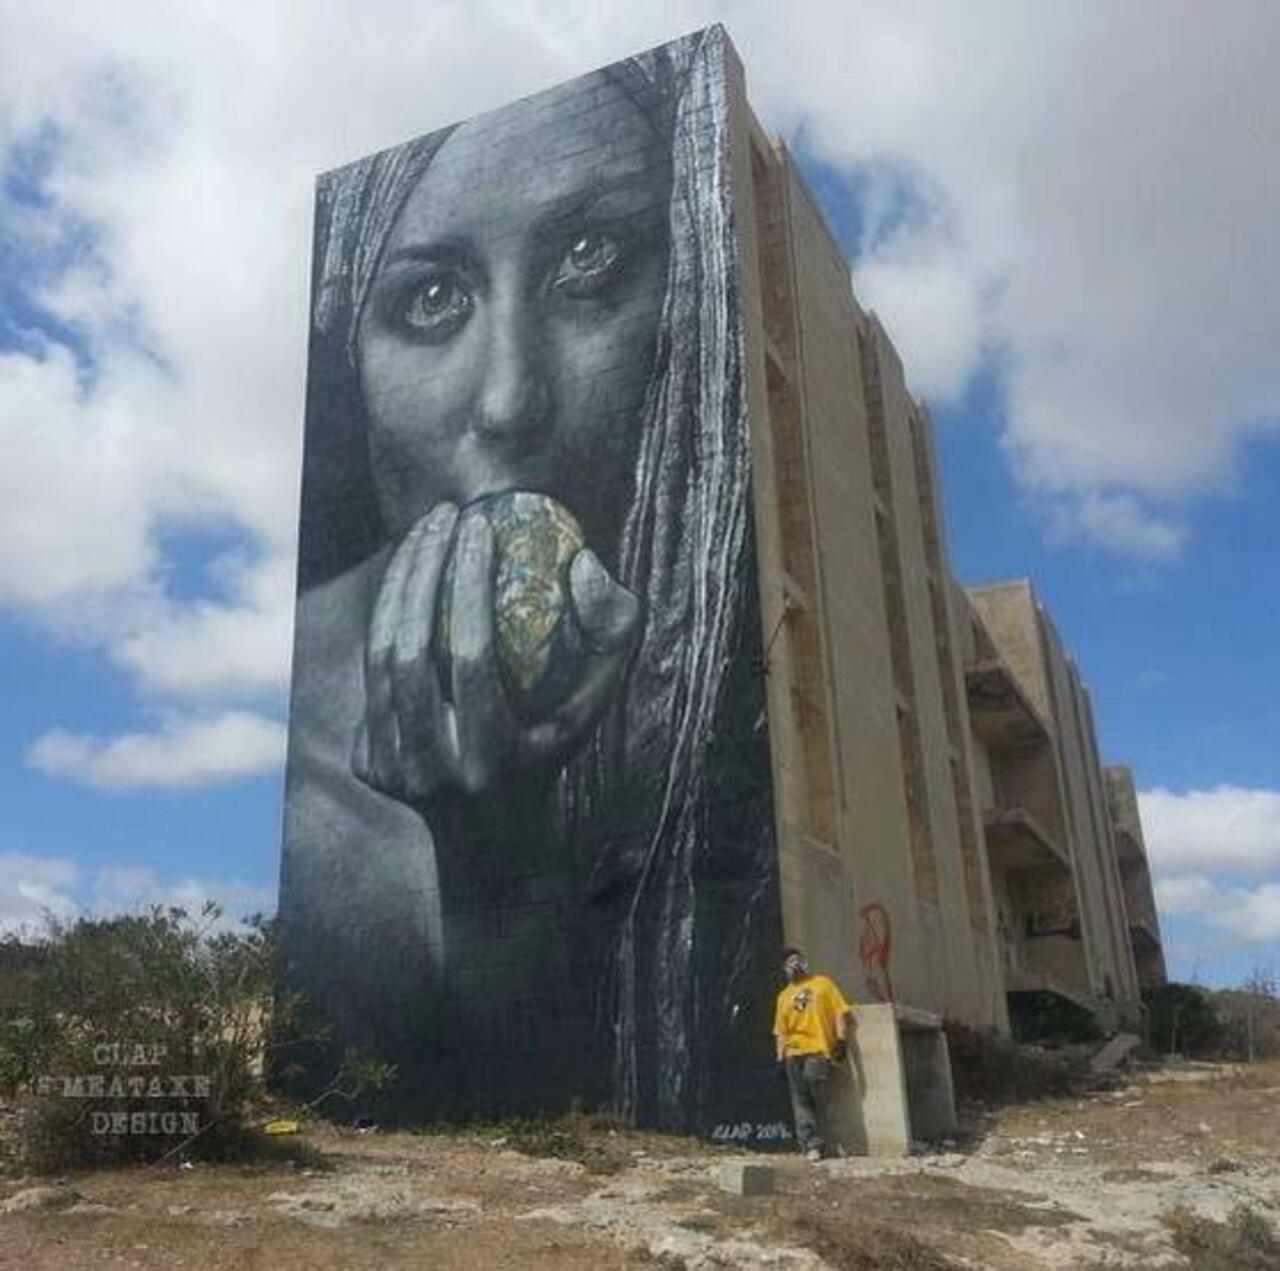 Artist Meataxe new awesome large scale Street Art mural in Malta #art #graffiti #mural #streetart http://t.co/yxaPTelPUJ